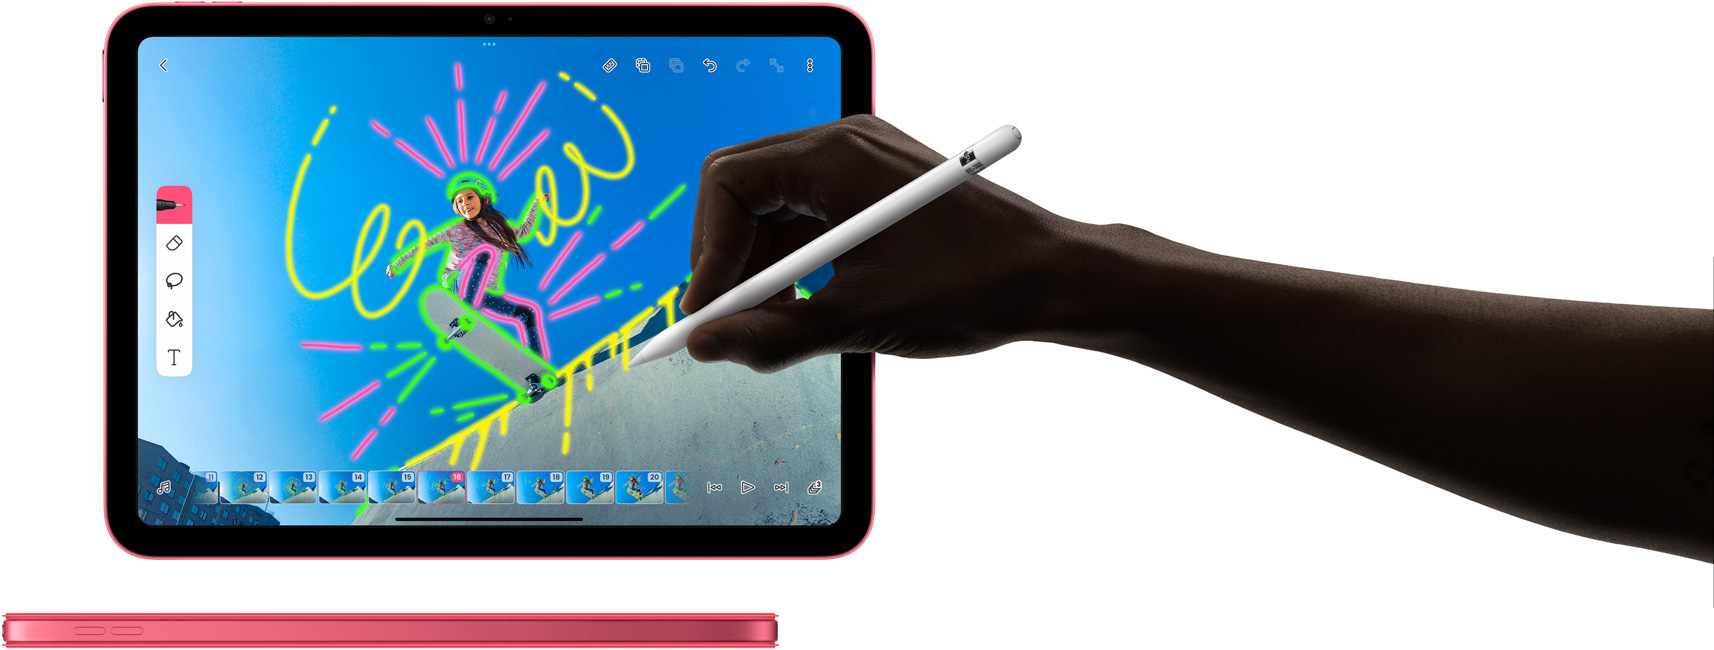 Utilisation d’un Apple Pencil dans FlipaClip et vue latérale d’un iPad rose avec une coque Smart Folio assortie.